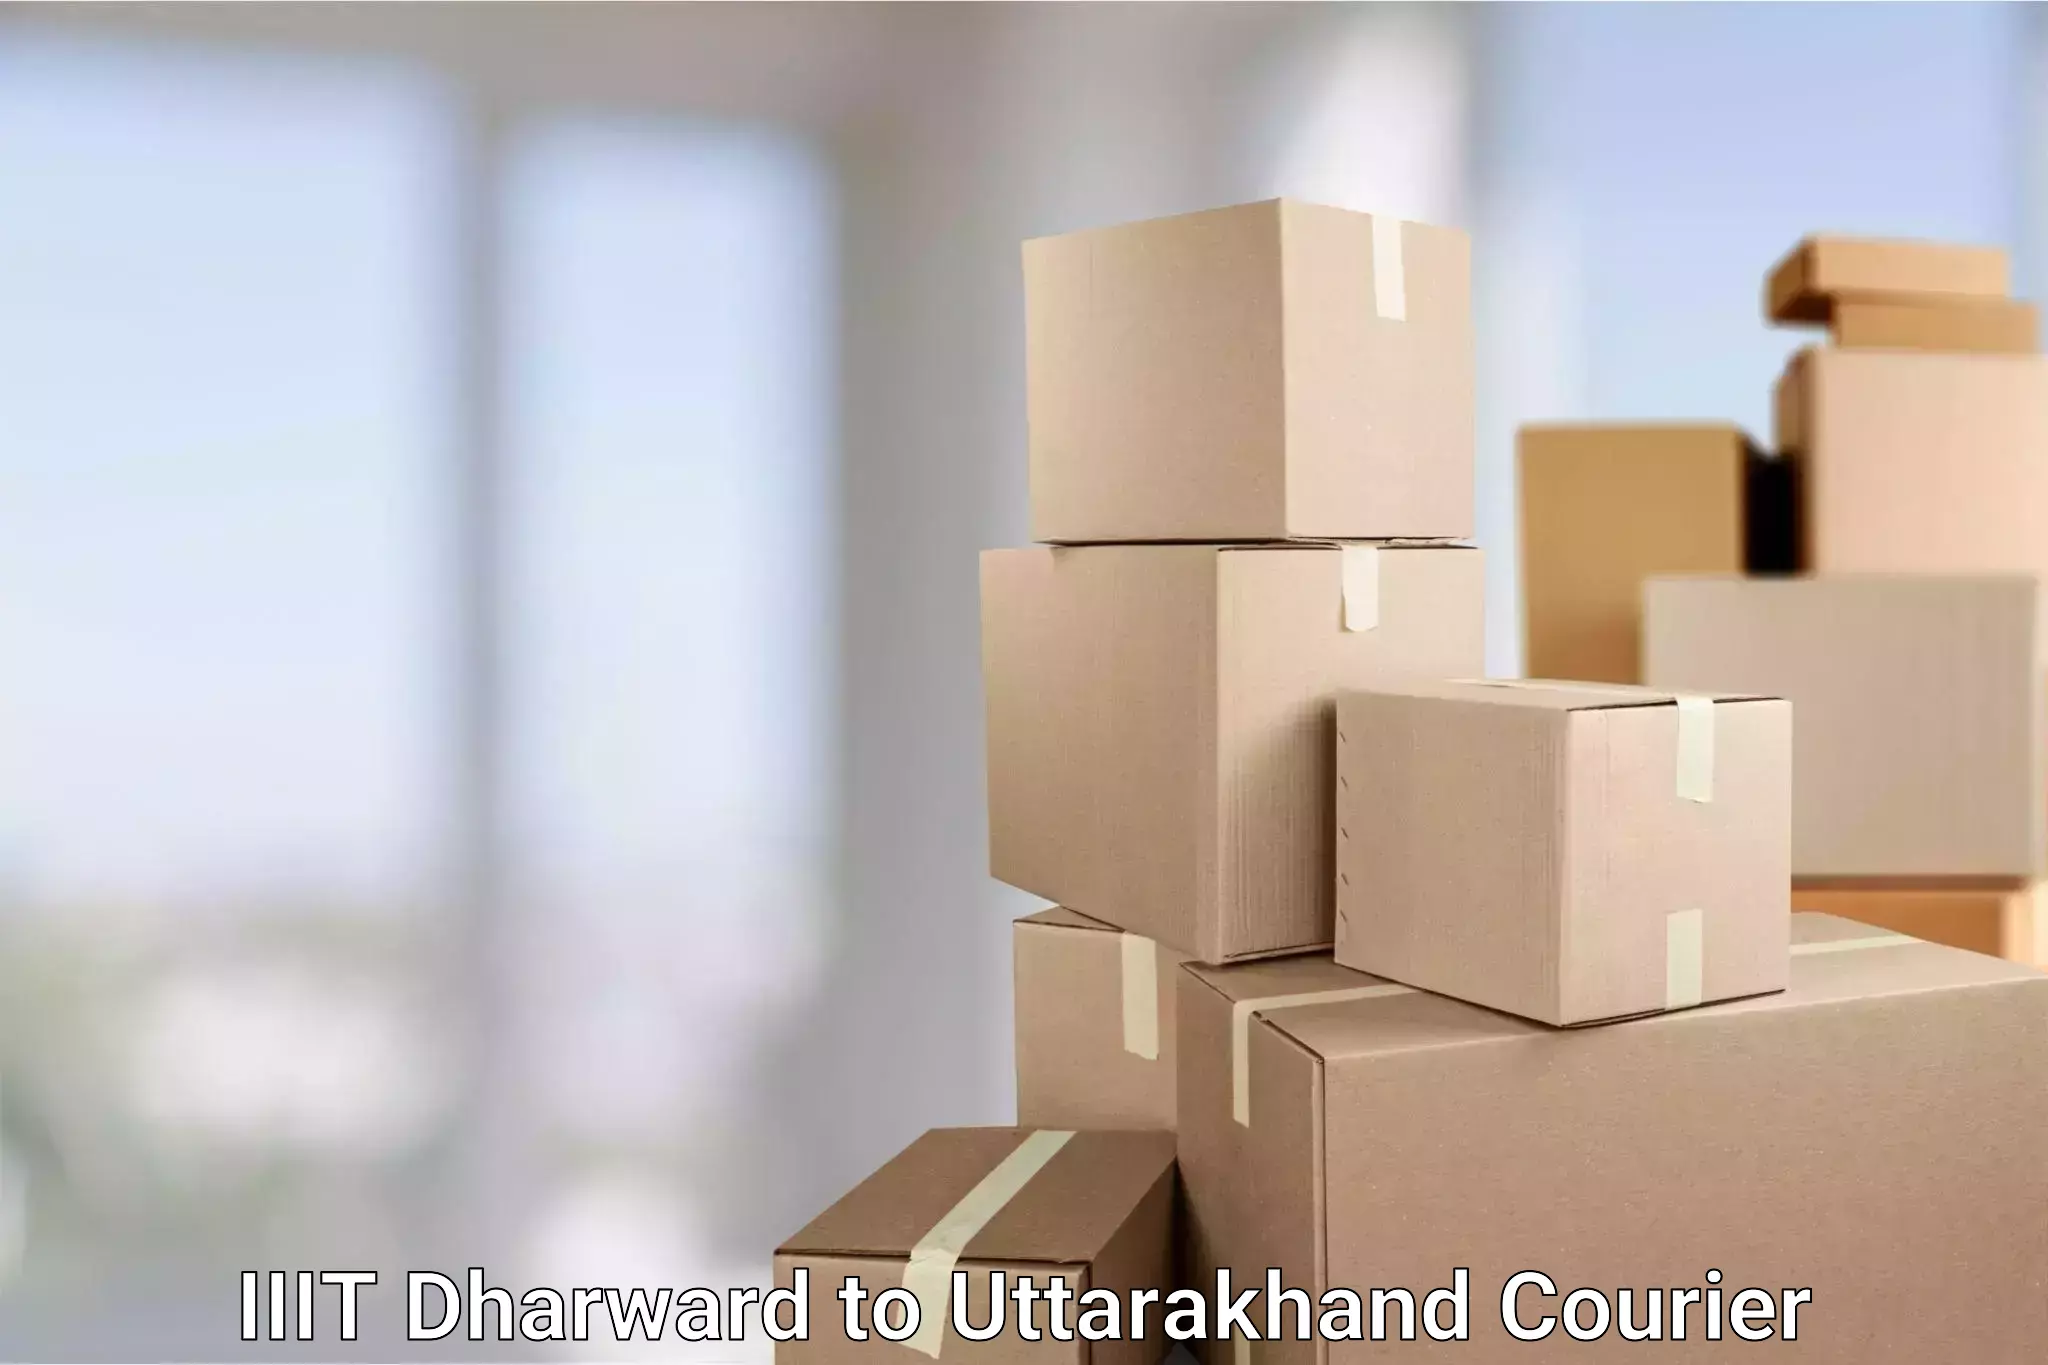 Express logistics IIIT Dharward to Haridwar